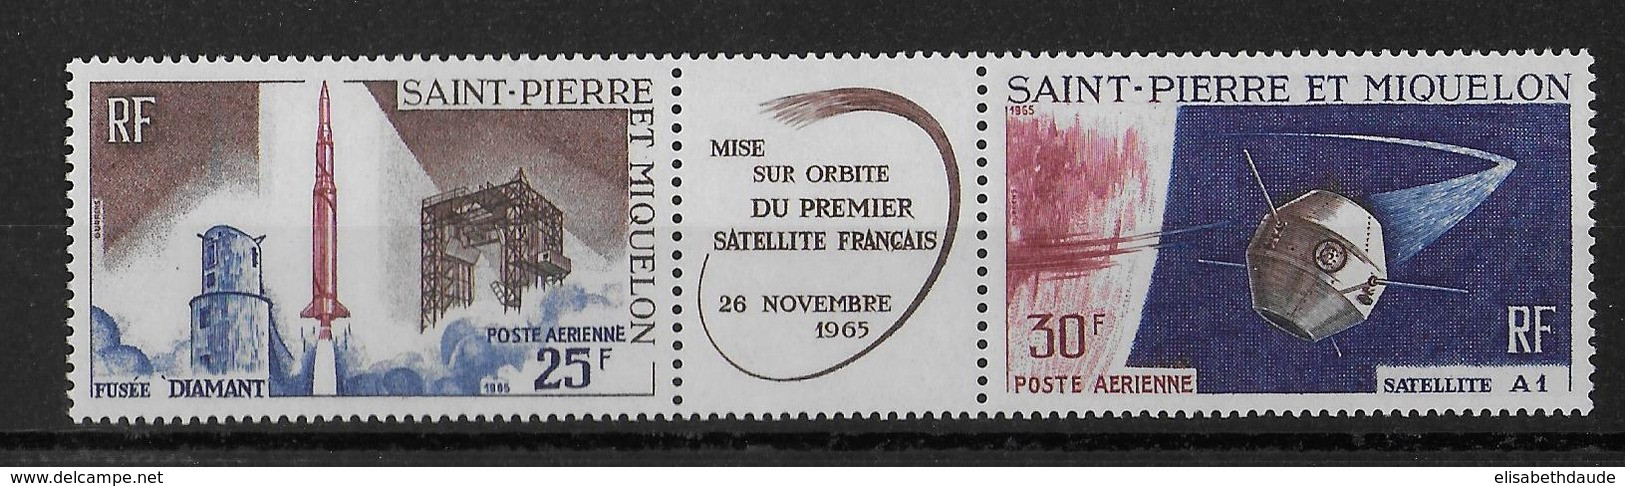 1966 - LANCEMENT 1° SATELLITE - SPM - YT N° PA 18A ** MNH - COTE = 18 EUROS - 1966 Lancement 1e Satellite Française à Hammaguir